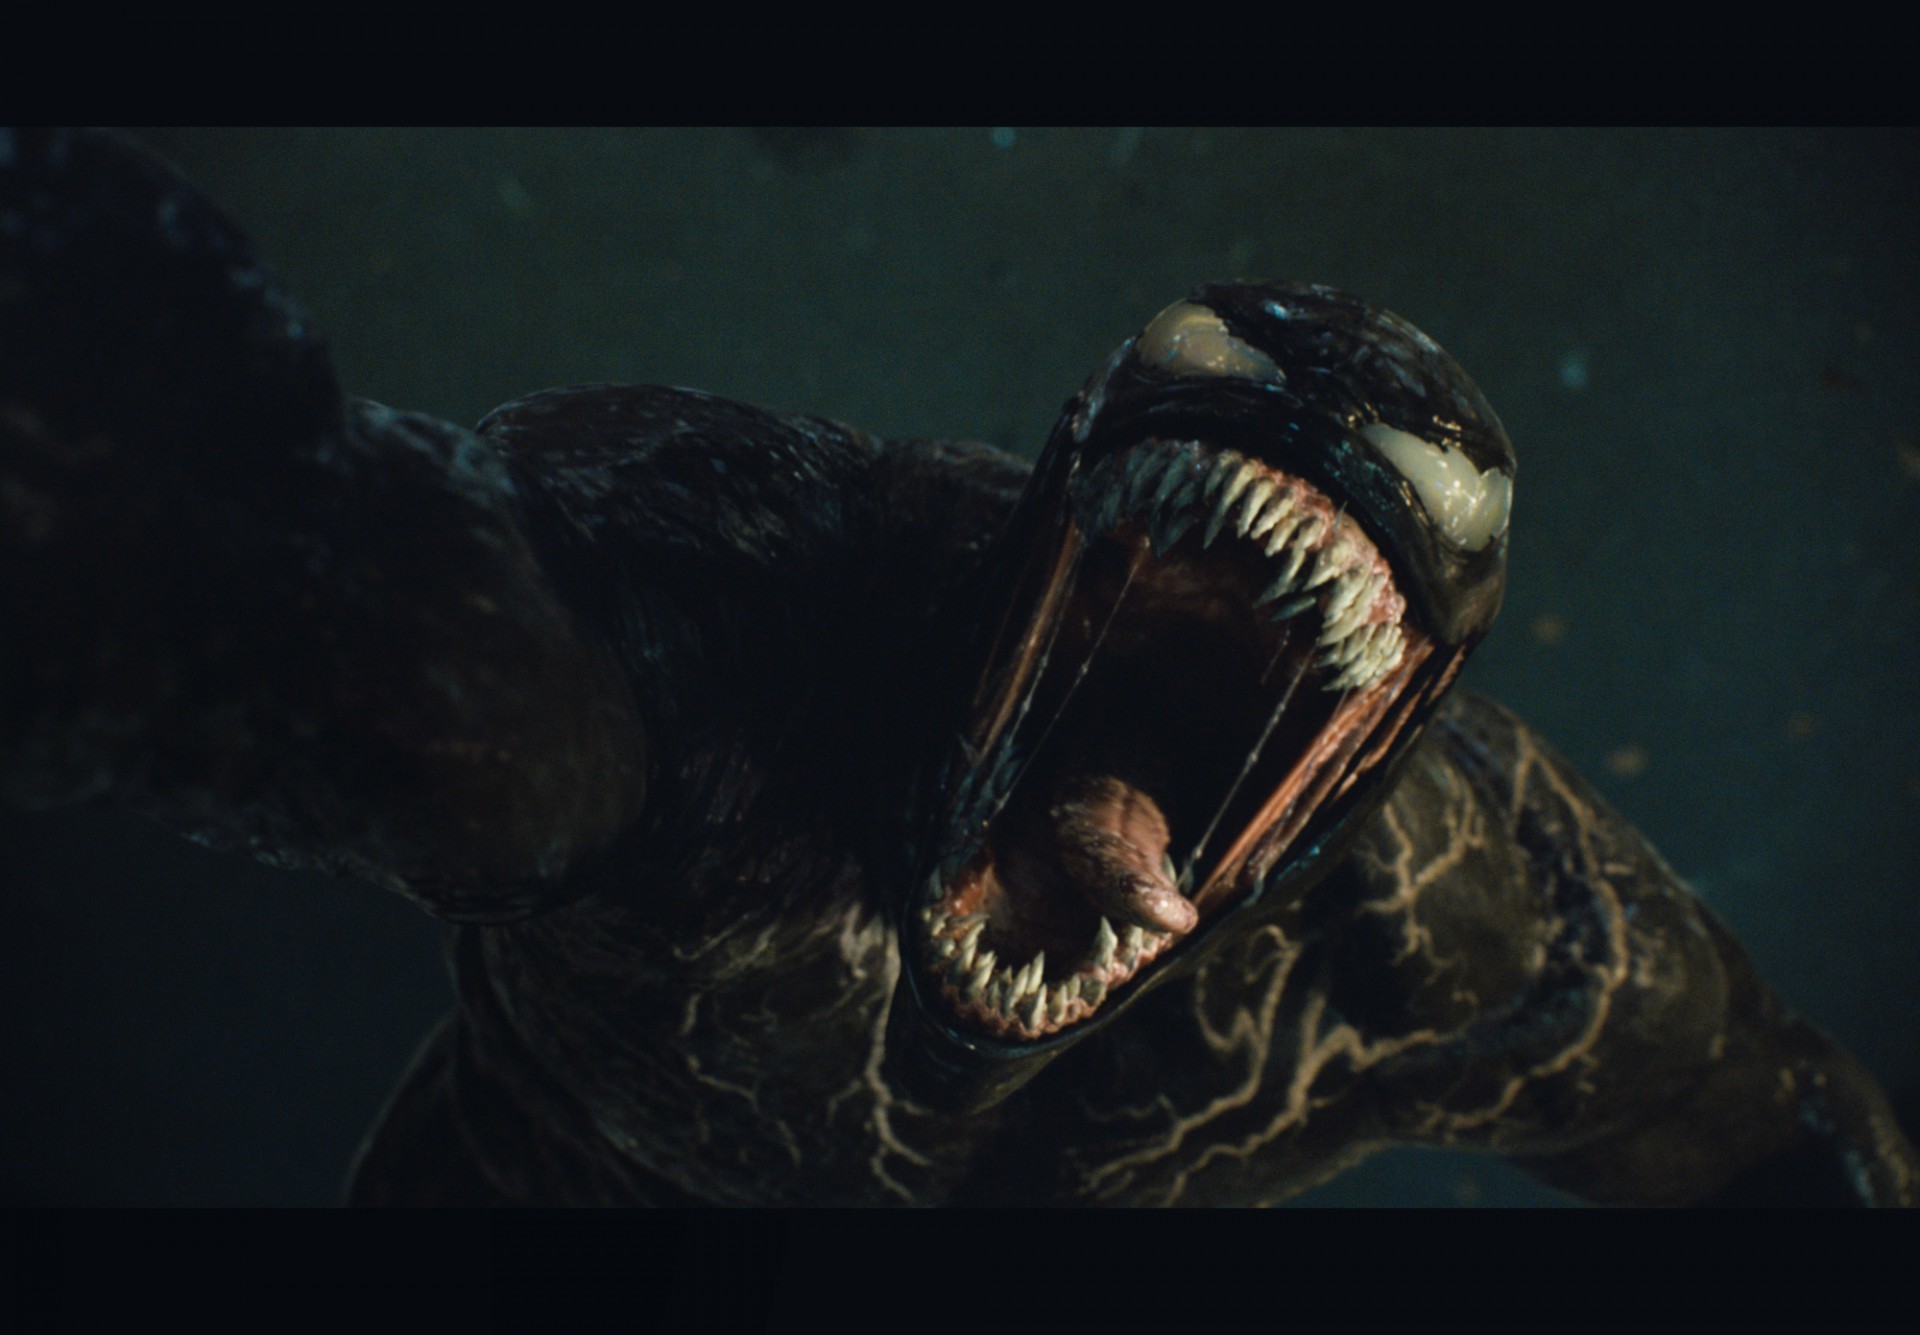 Venom: assista ao novo trailer do filme do anti-herói - Revista